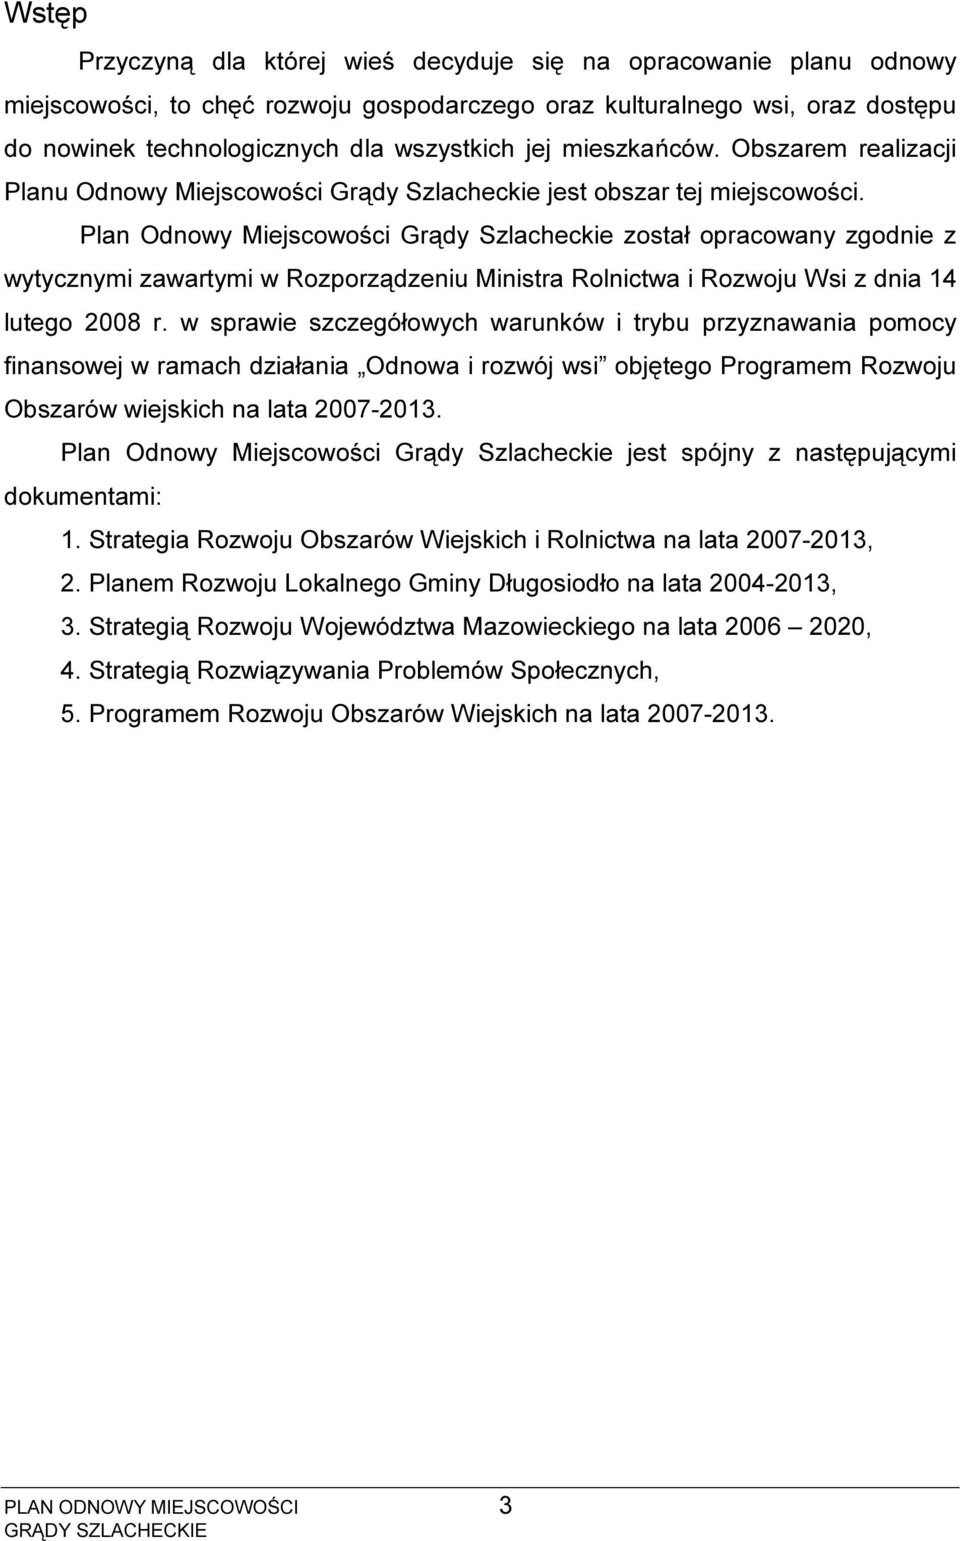 Plan Odnowy Miejscowości Grądy Szlacheckie został opracowany zgodnie z wytycznymi zawartymi w Rozporządzeniu Ministra Rolnictwa i Rozwoju Wsi z dnia 14 lutego 2008 r.